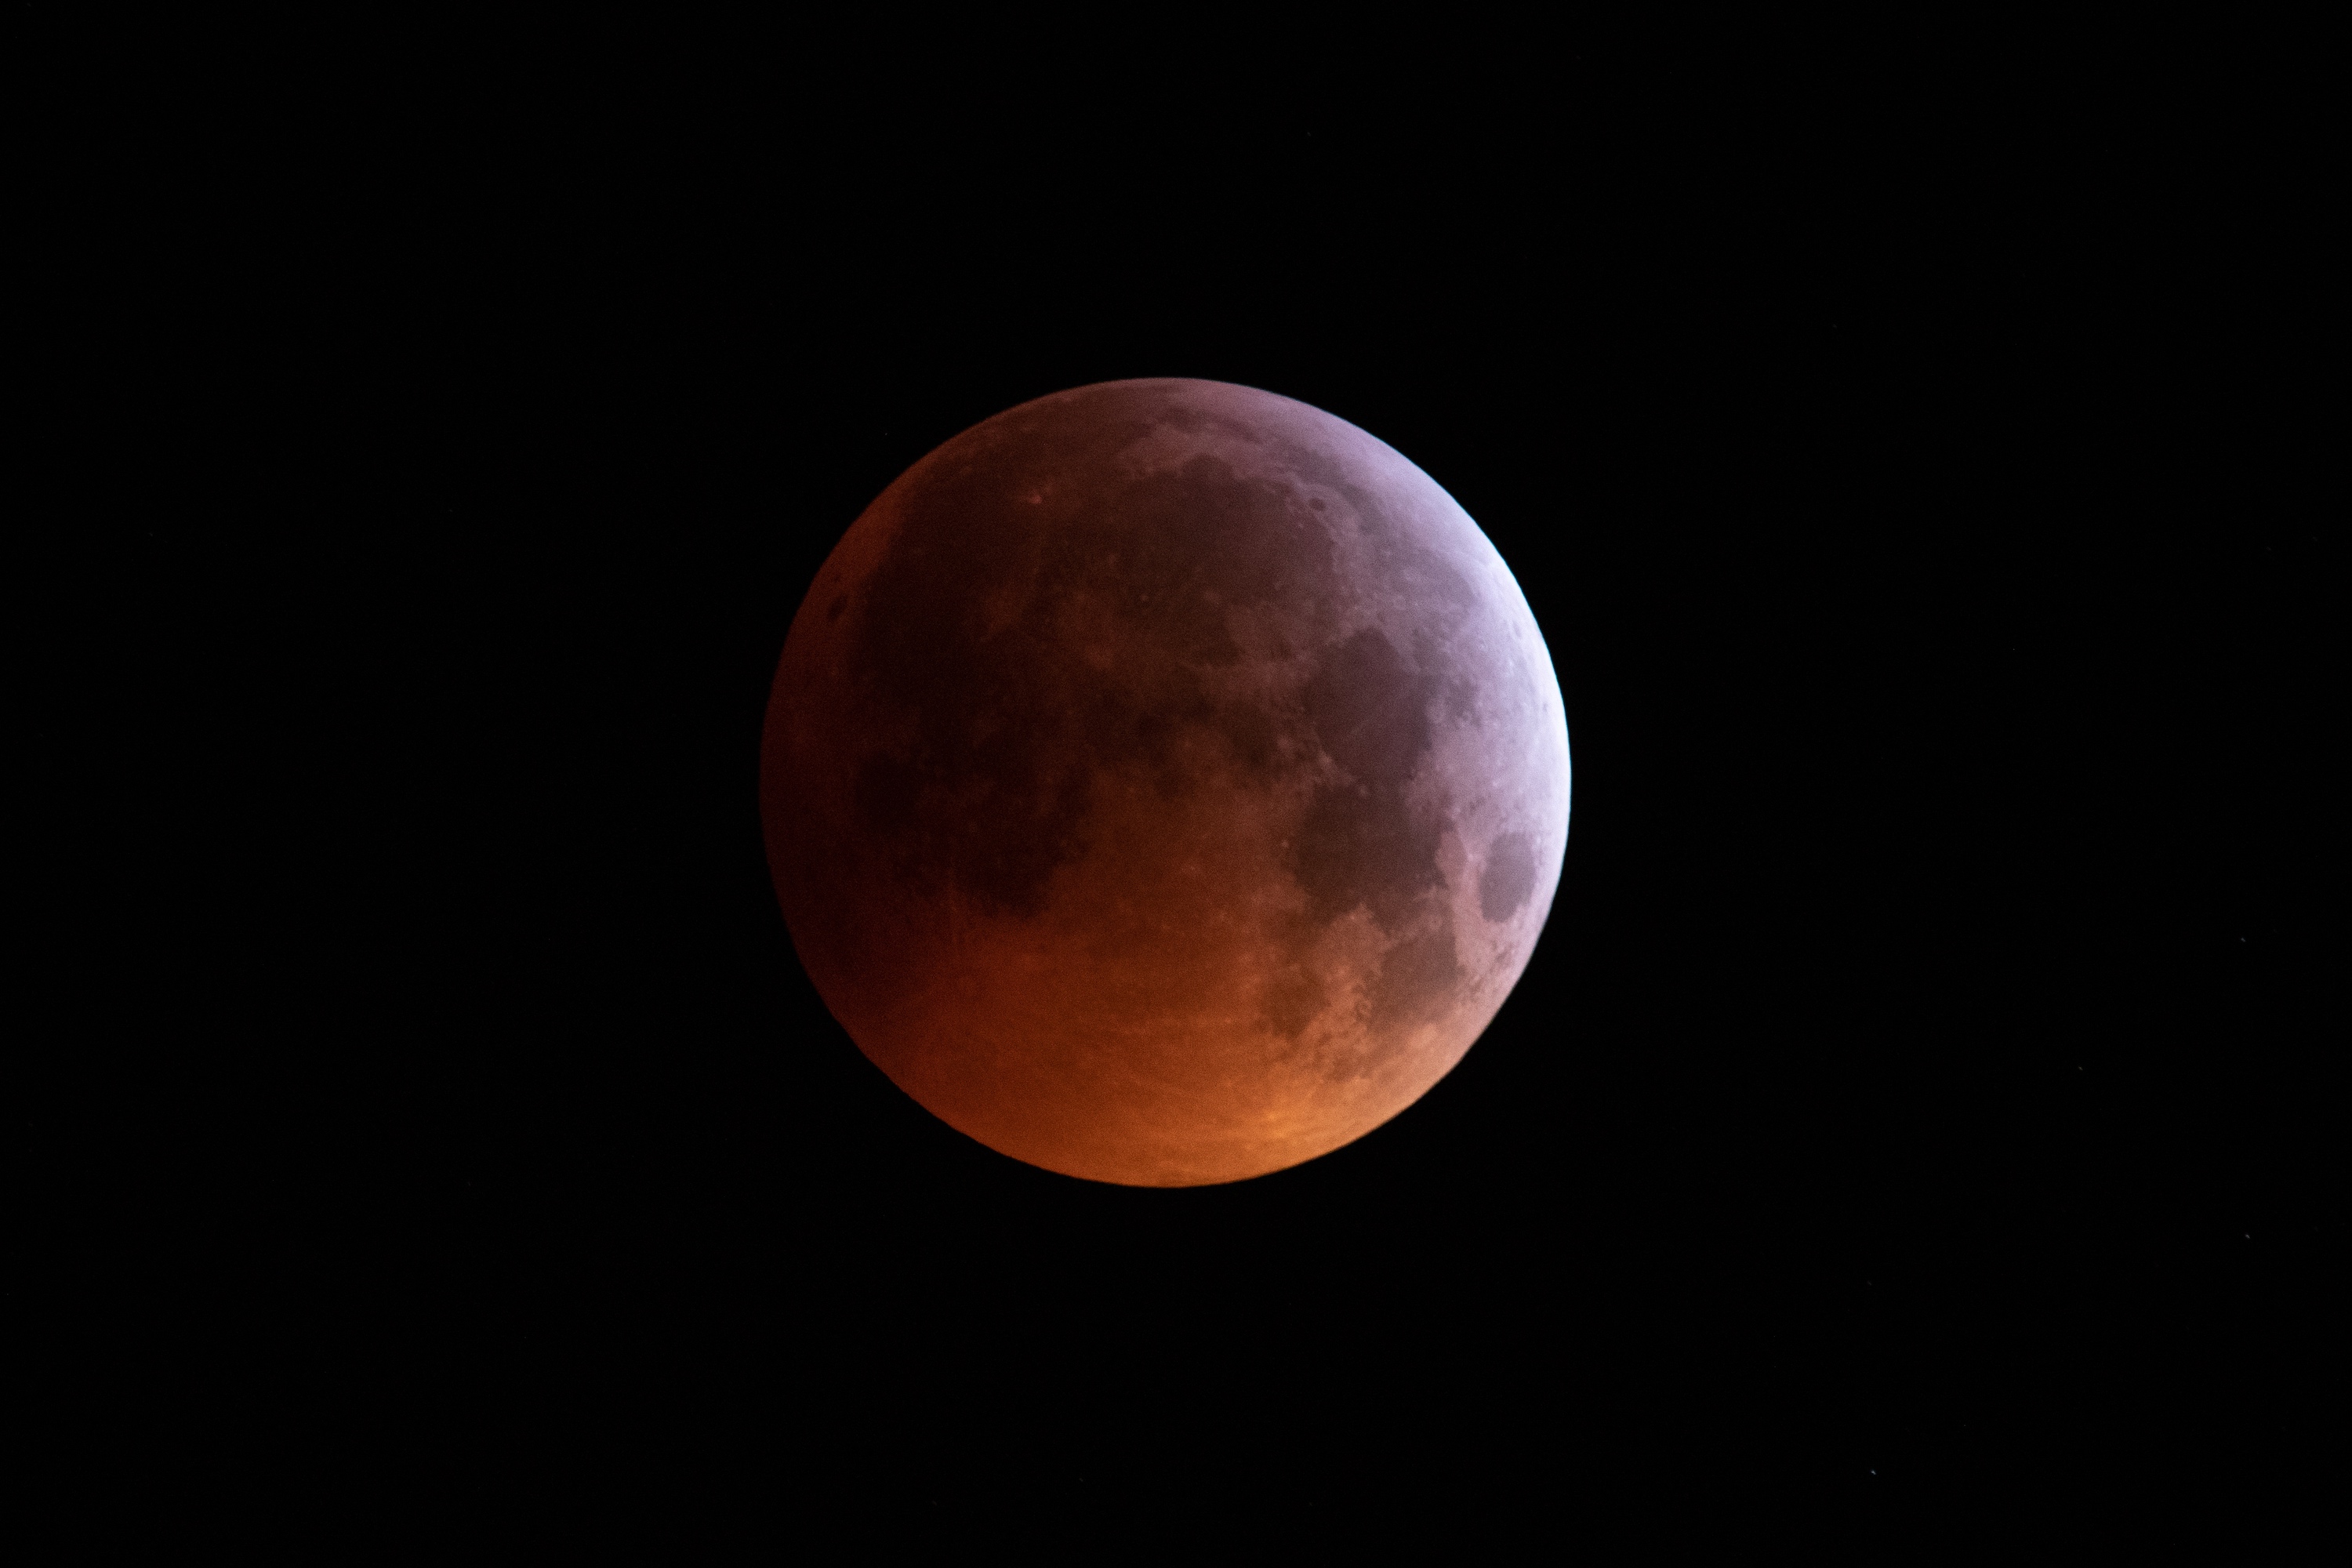 L'éclipse totale de la Lune du 21 janvier 2019. © James, Adobe Stock